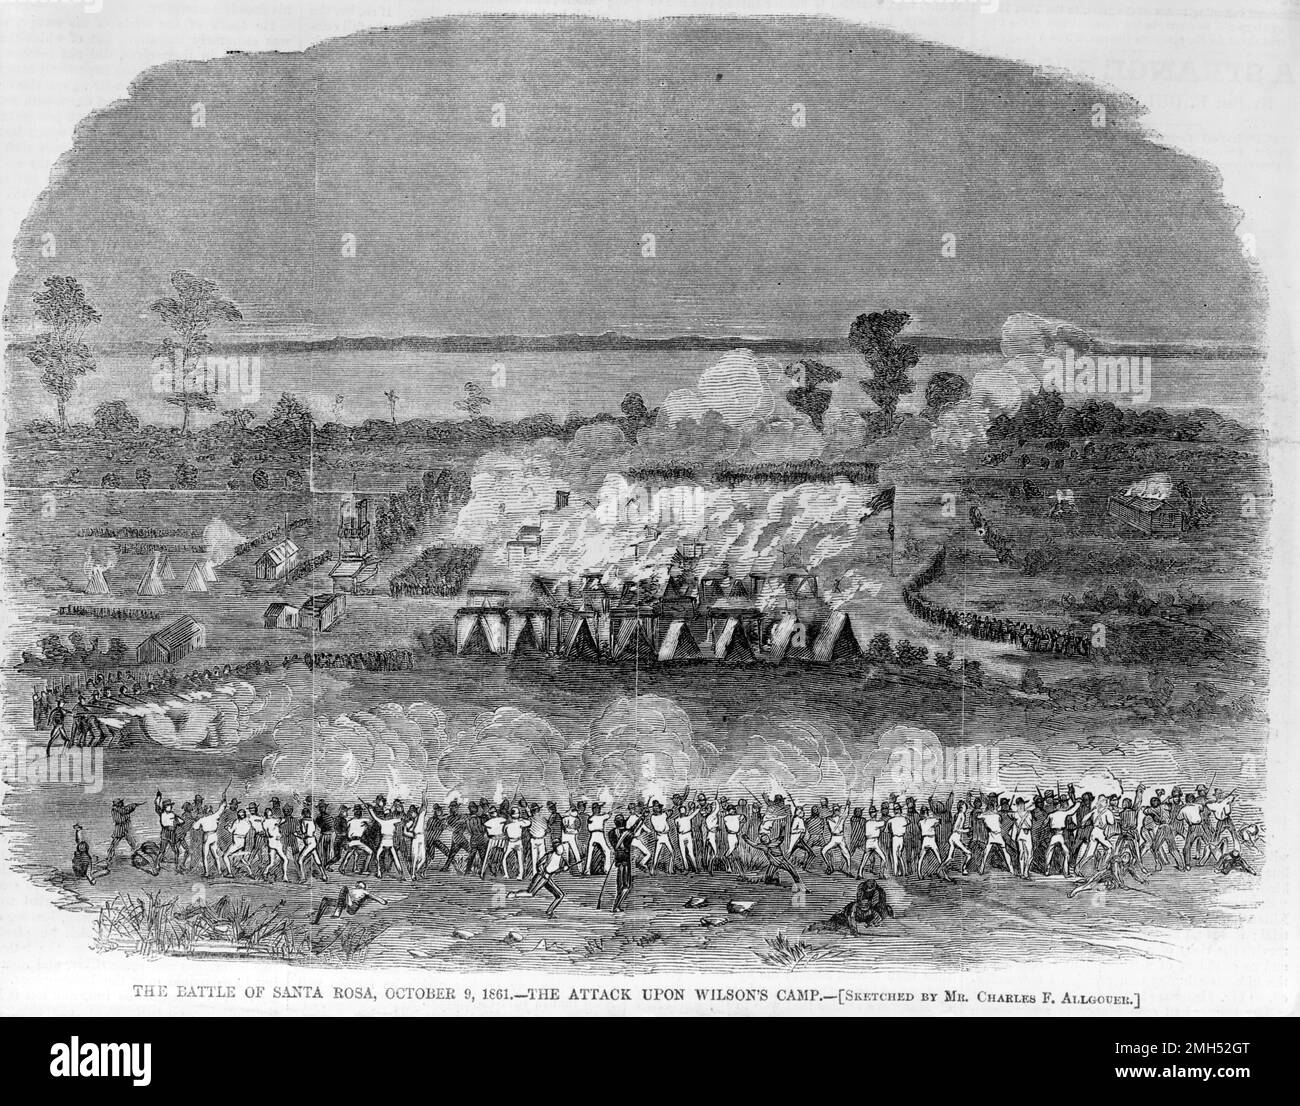 La Batalla de la Isla Santa Rosa fue una batalla en la Guerra Civil Americana que tuvo lugar el 9 de octubre de 1861. Fue un intento fallido de la Confederación de tomar Fort Pickens en la Isla Santa Rosa Foto de stock